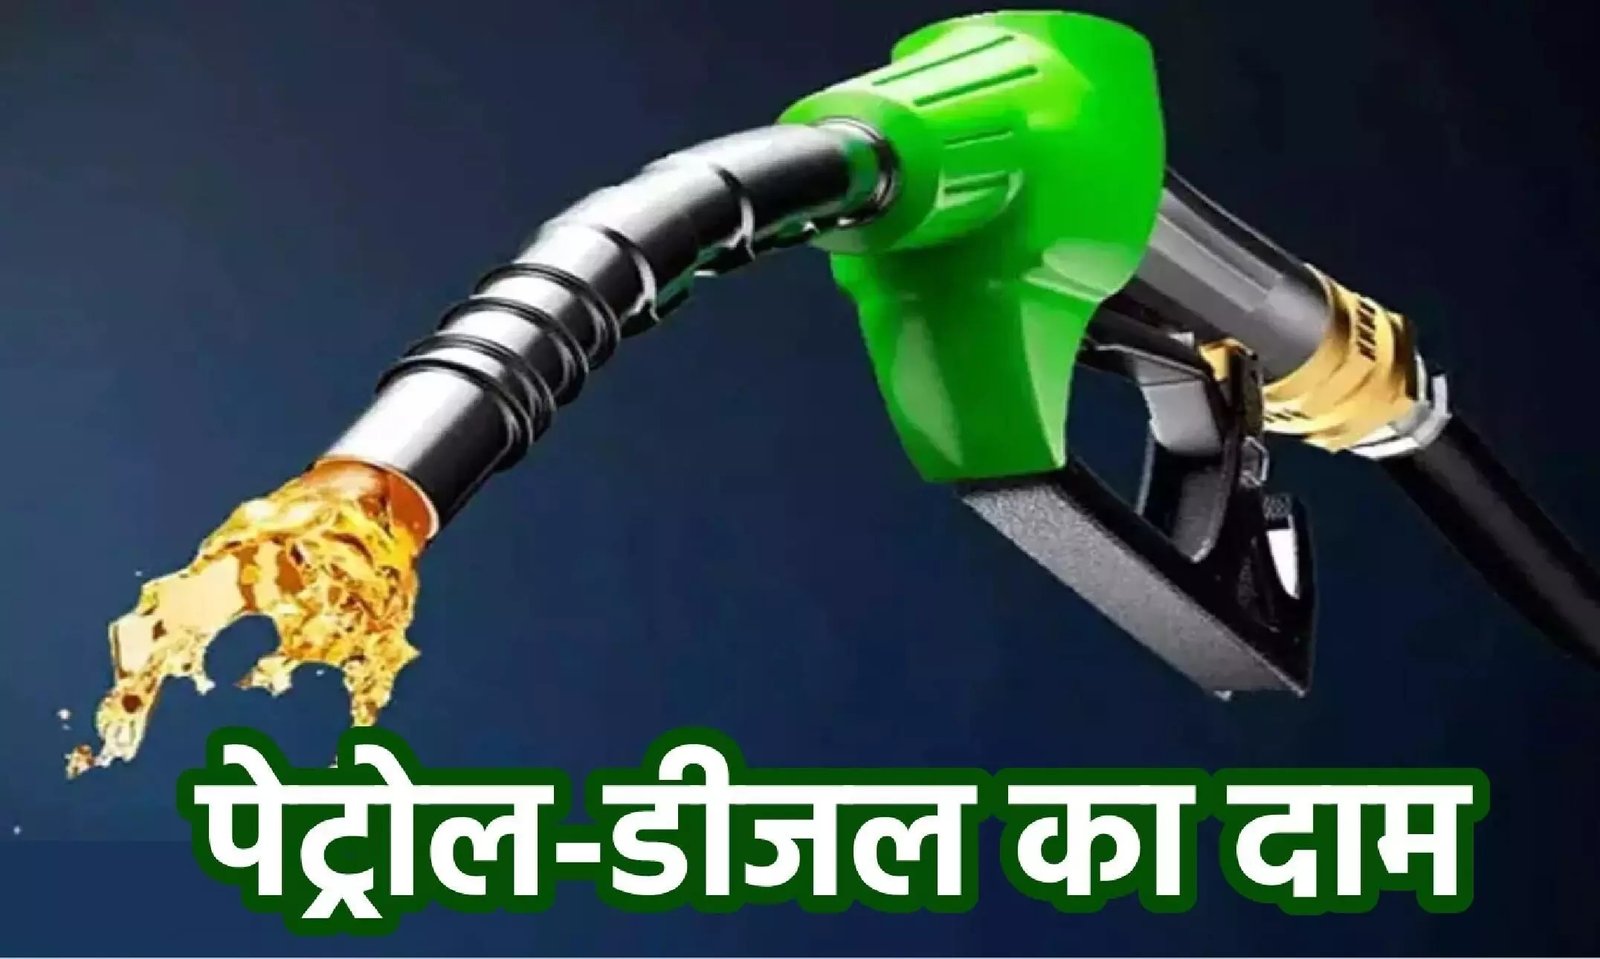 Petrol Diesel Price Today - इन जिलों में लोगो को पेट्रोल-डीजल में मिली राहत, जानिए ताज़ा भाव,